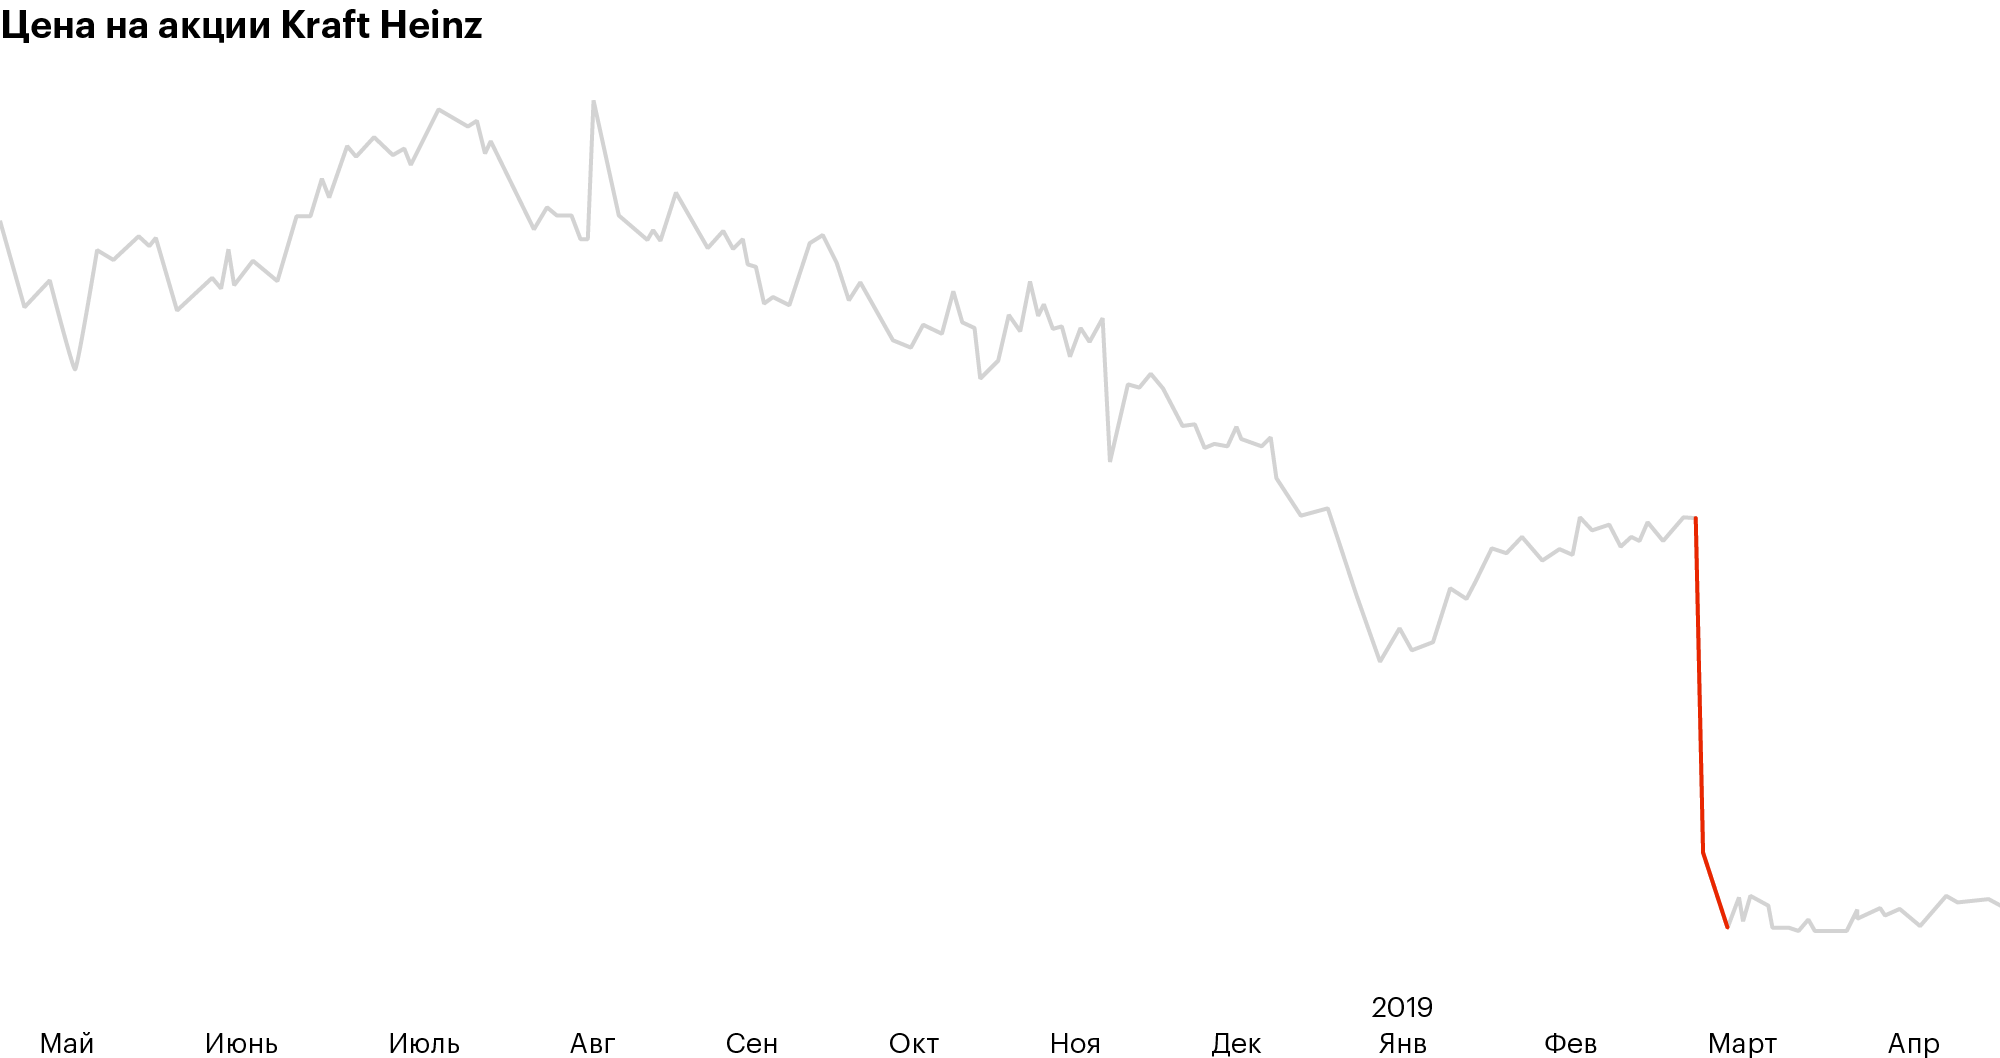 21 февраля вышла отчетность за 2018 год. Kraft Heinz получил убыток 10,3 млрд долларов, руководство снизило дивиденды на 37%. График: Tradingview.com